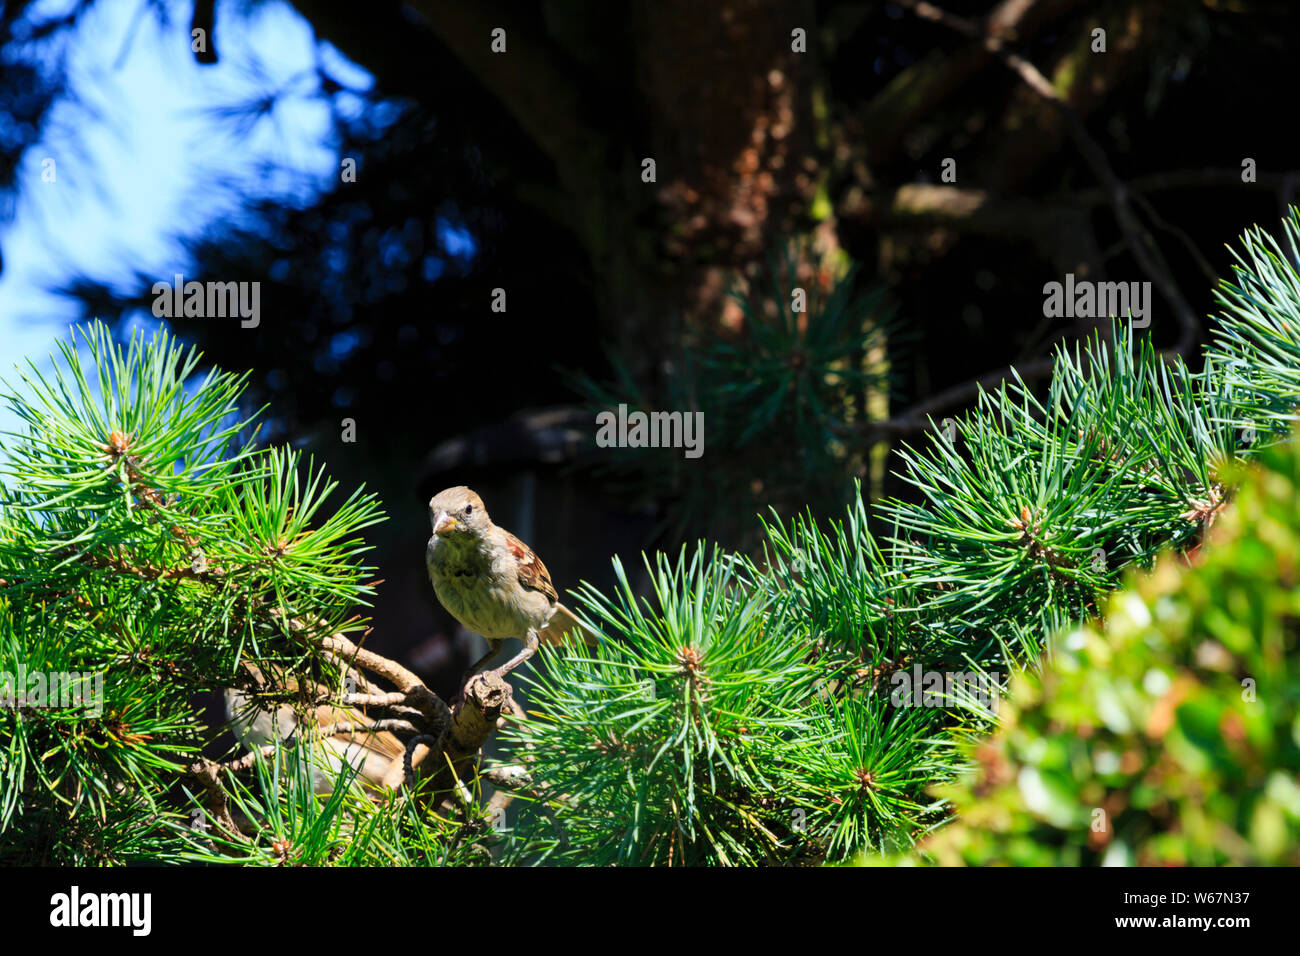 Weibliche gemeinsame house Sparrow, Passer domesticus, in einer Tanne. Stockfoto